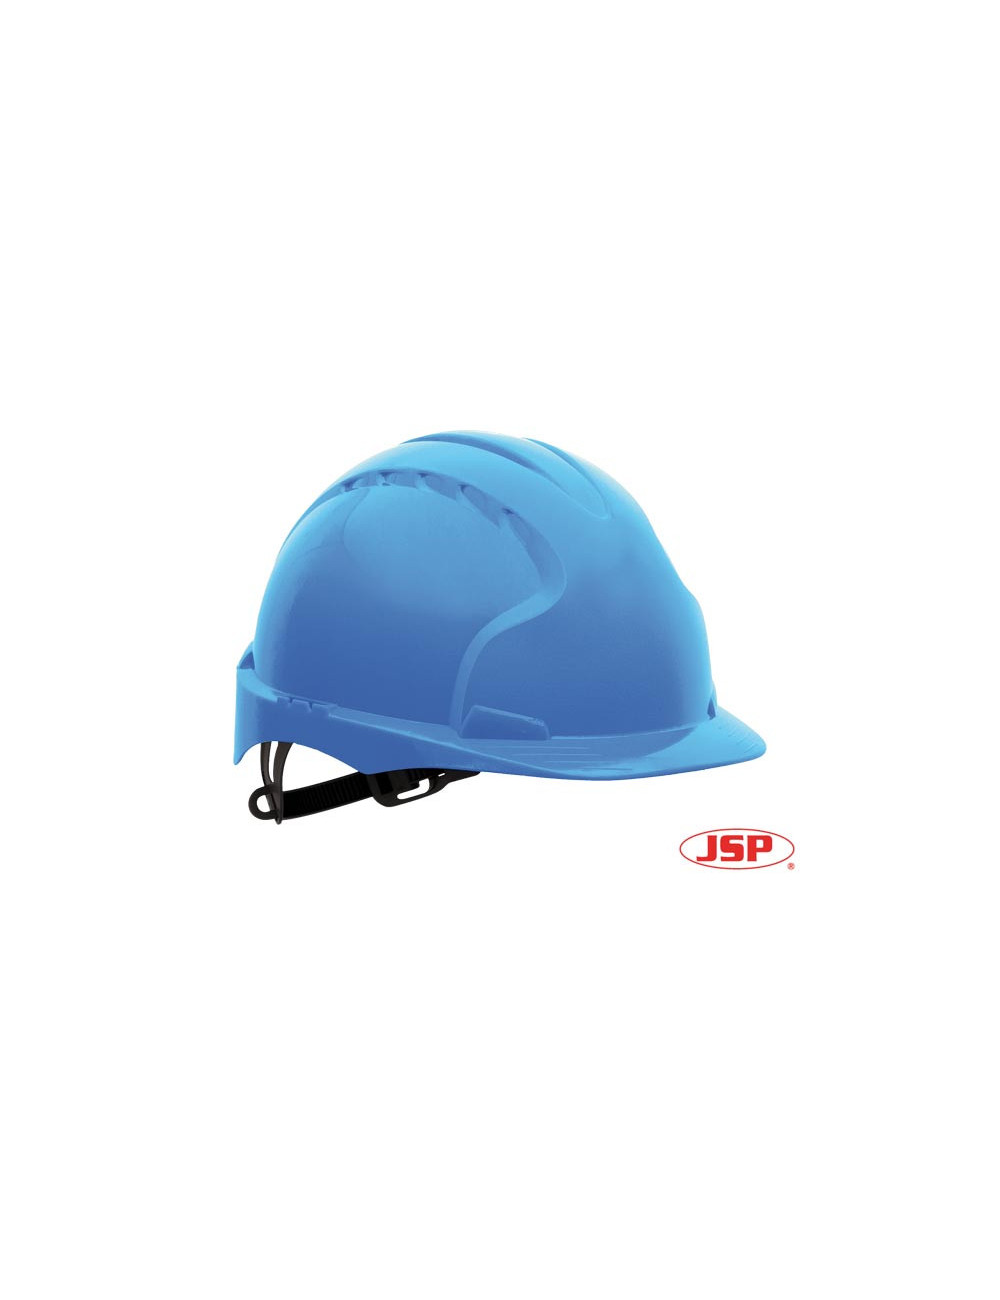 Protective helmet kas-evo3 n blue Jsp